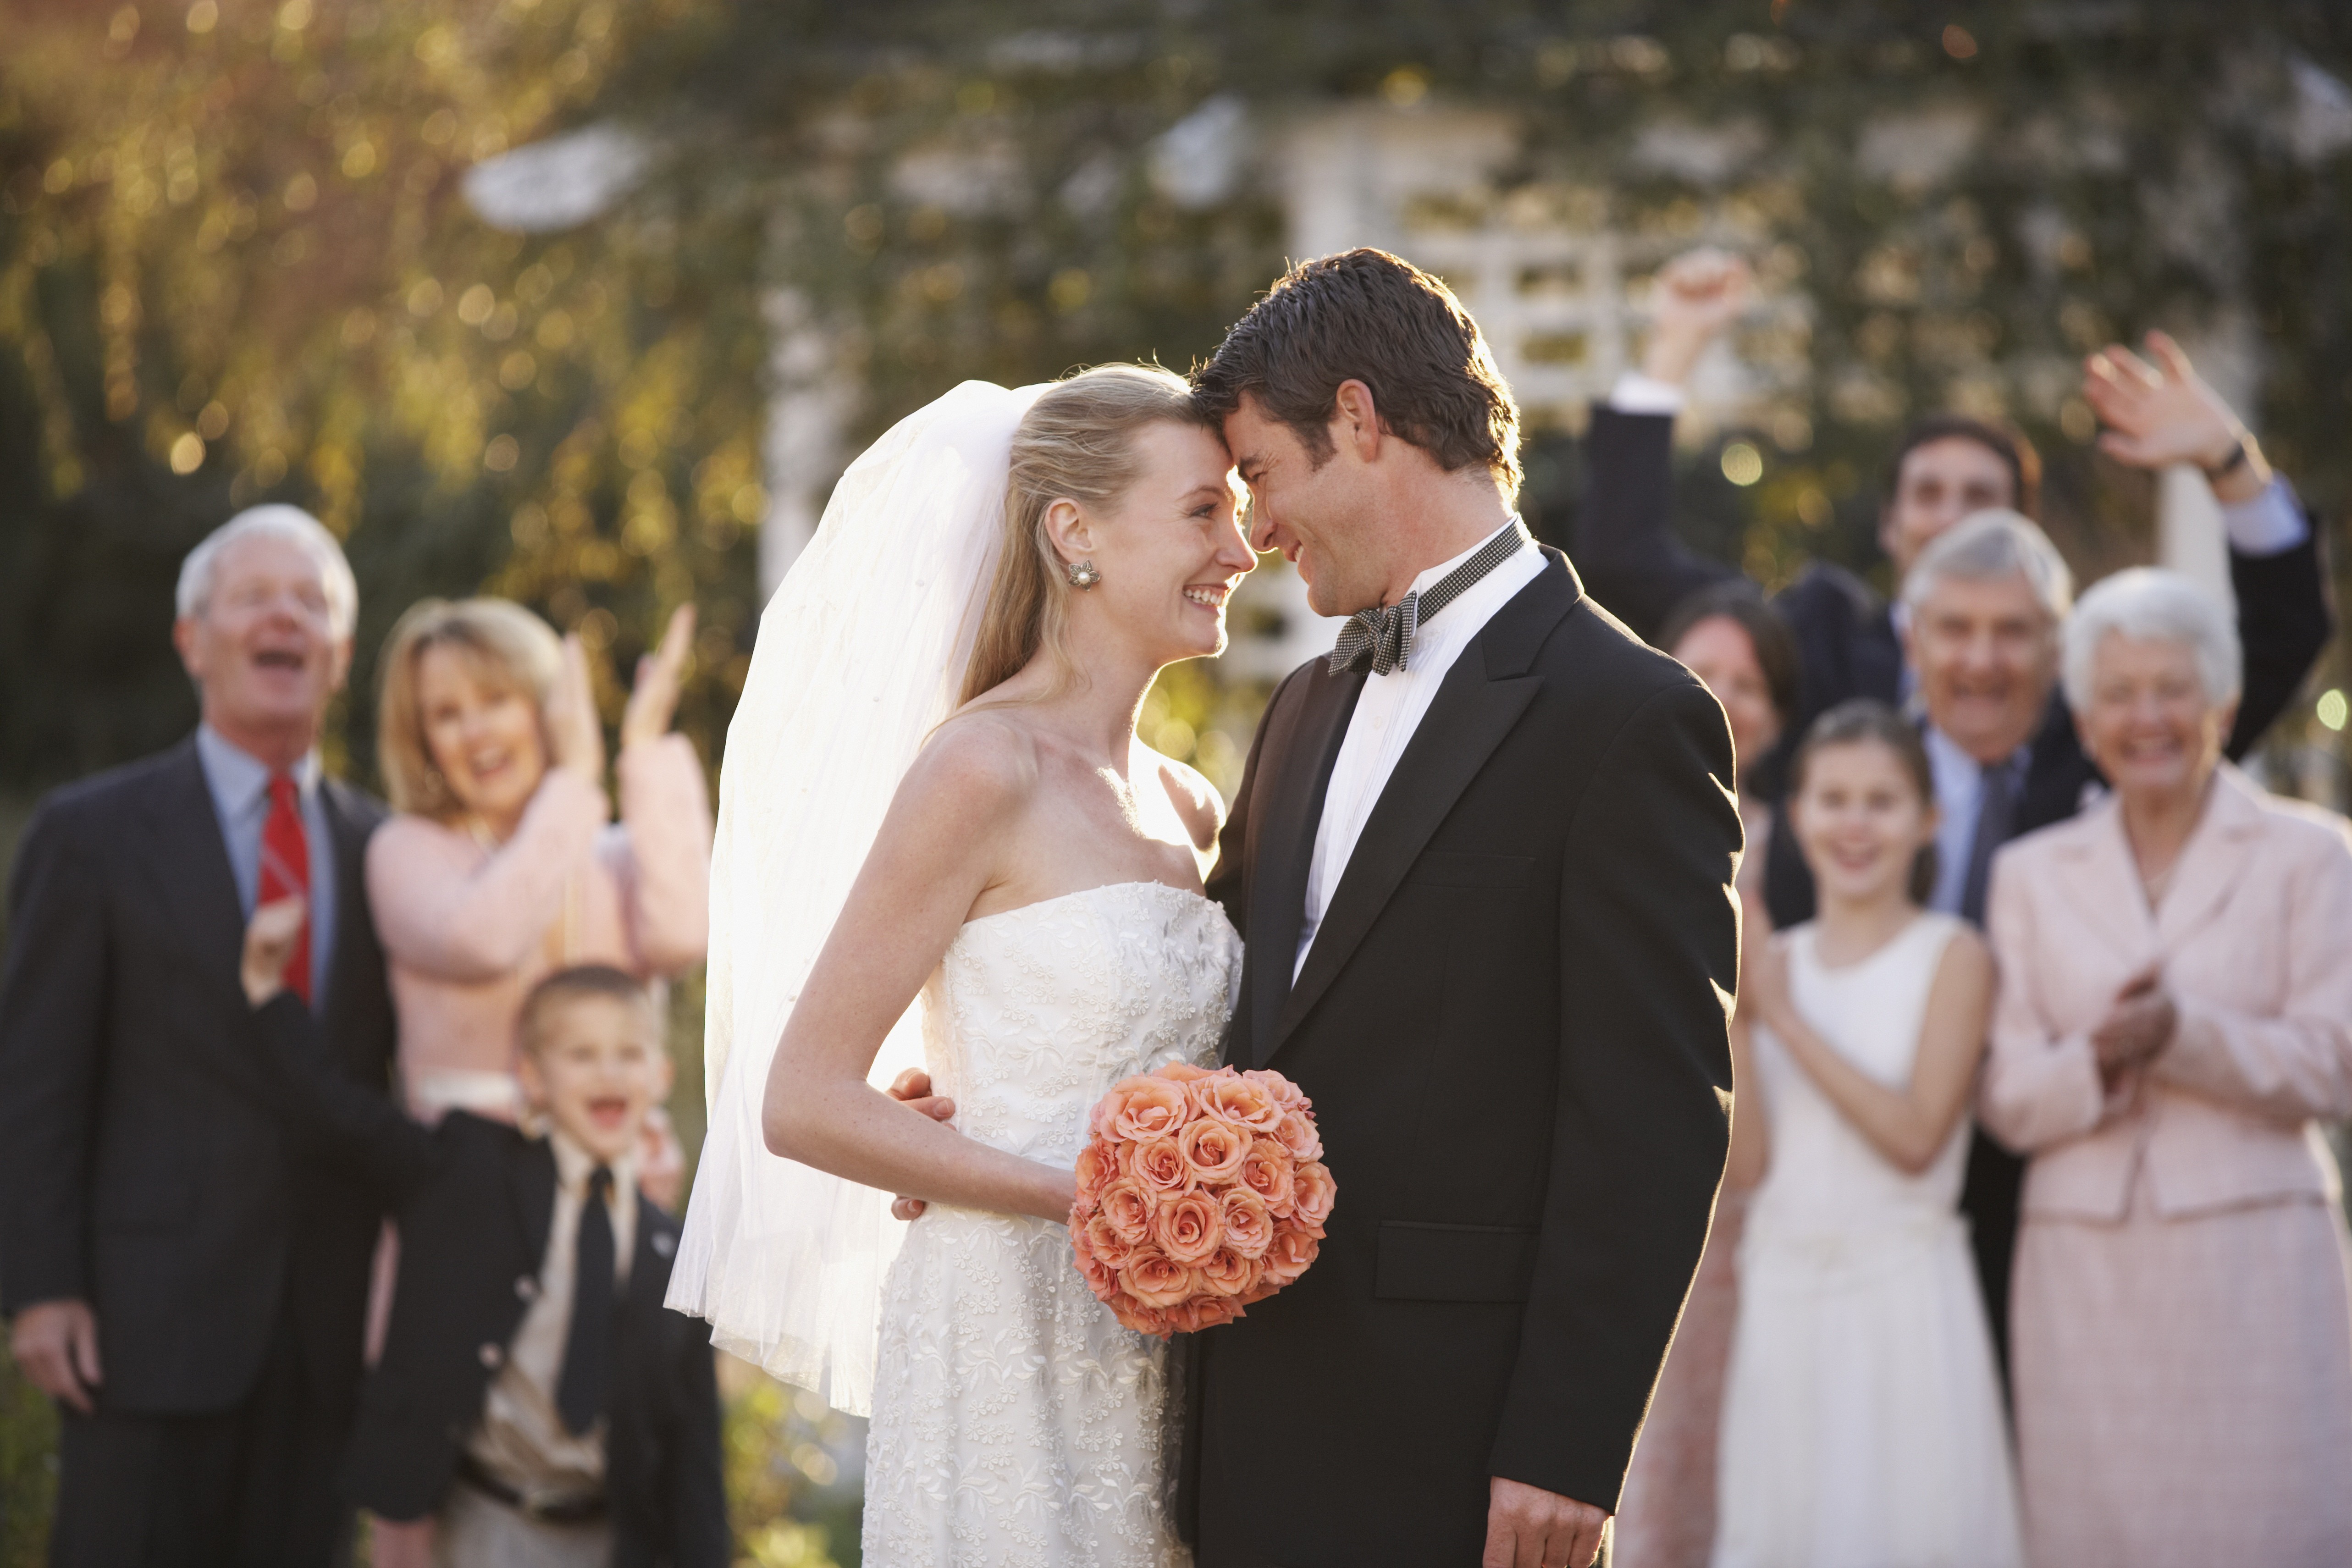 Des mariés partageant un sourire sous le regard des invités | Source : Getty Images